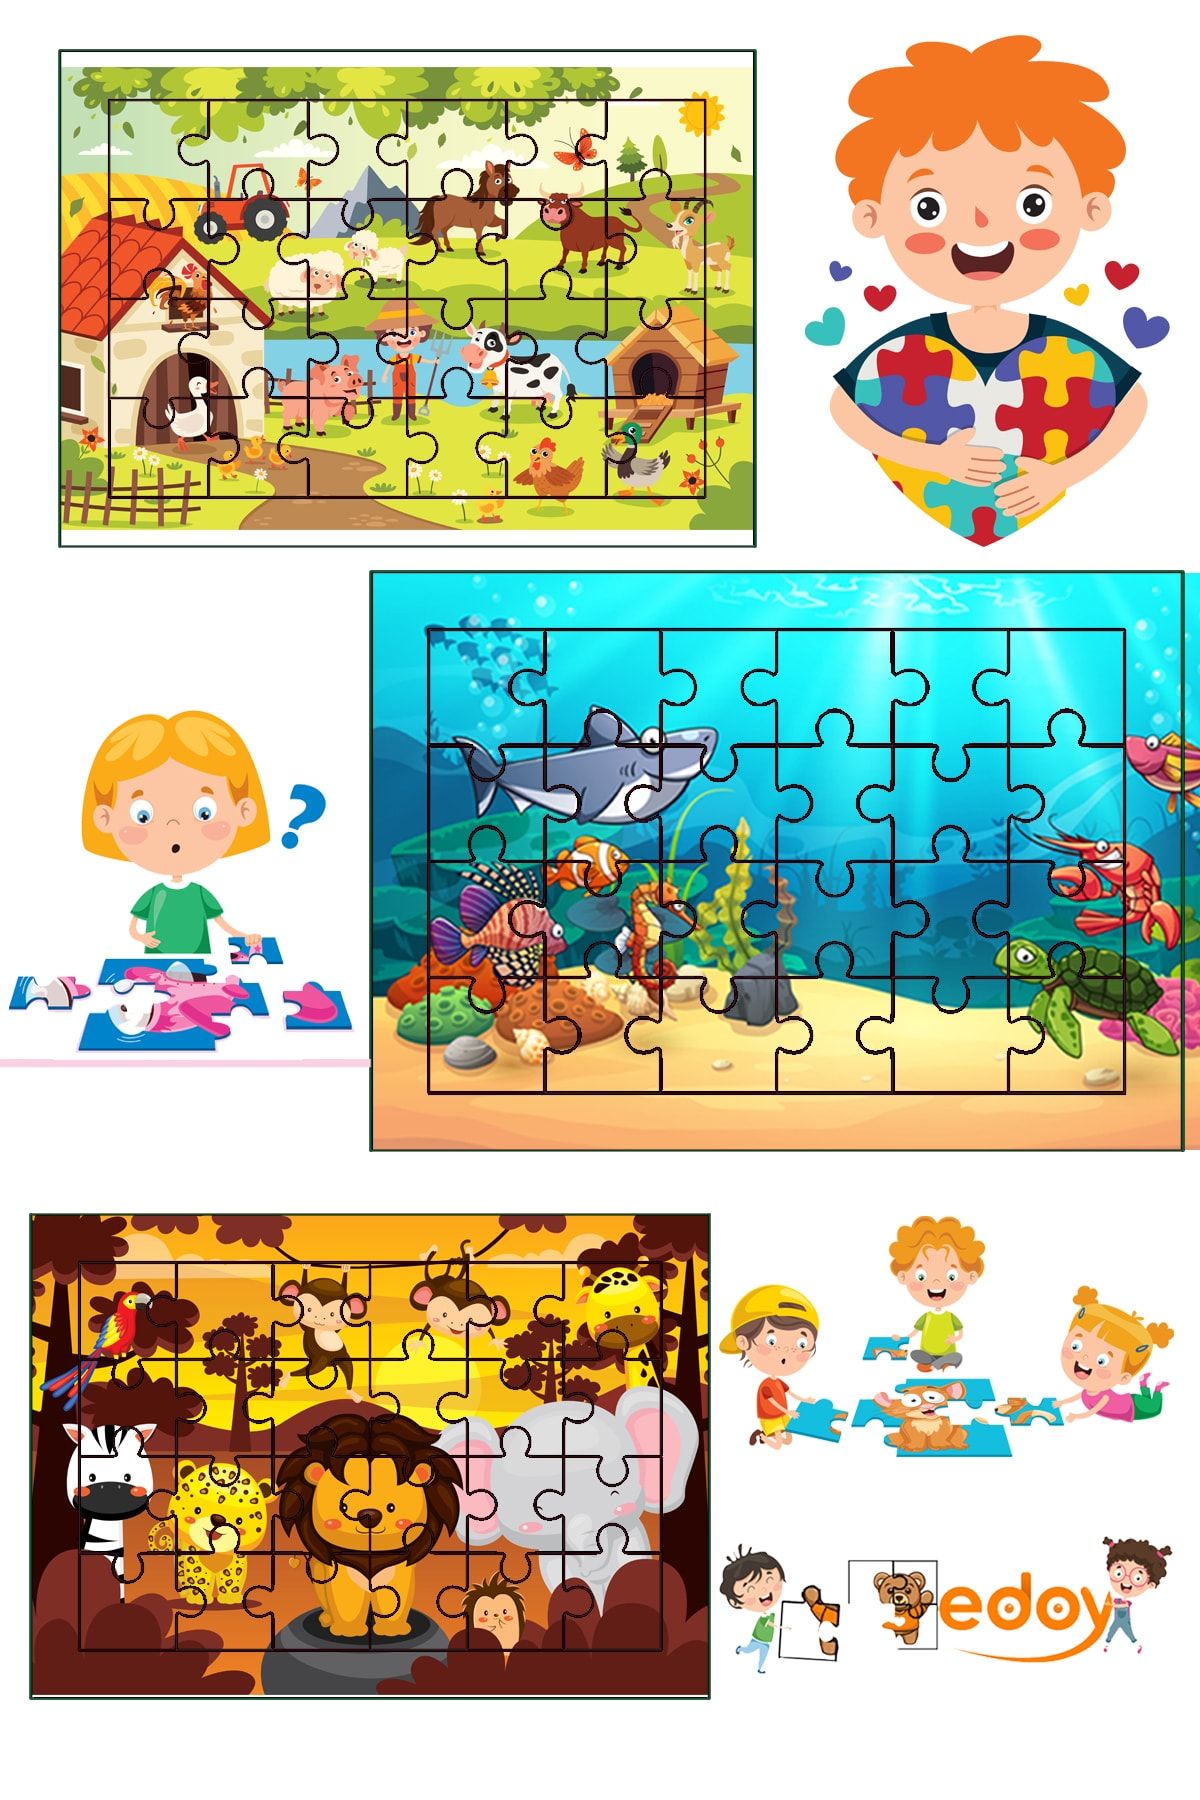 edoy Ahşap Çocuk Puzzle 24 Parça 3lü Set 2-4 Yaş Çocuklar Için Özel Tasarlanmıştır Model2 3lü Puzzle Seti